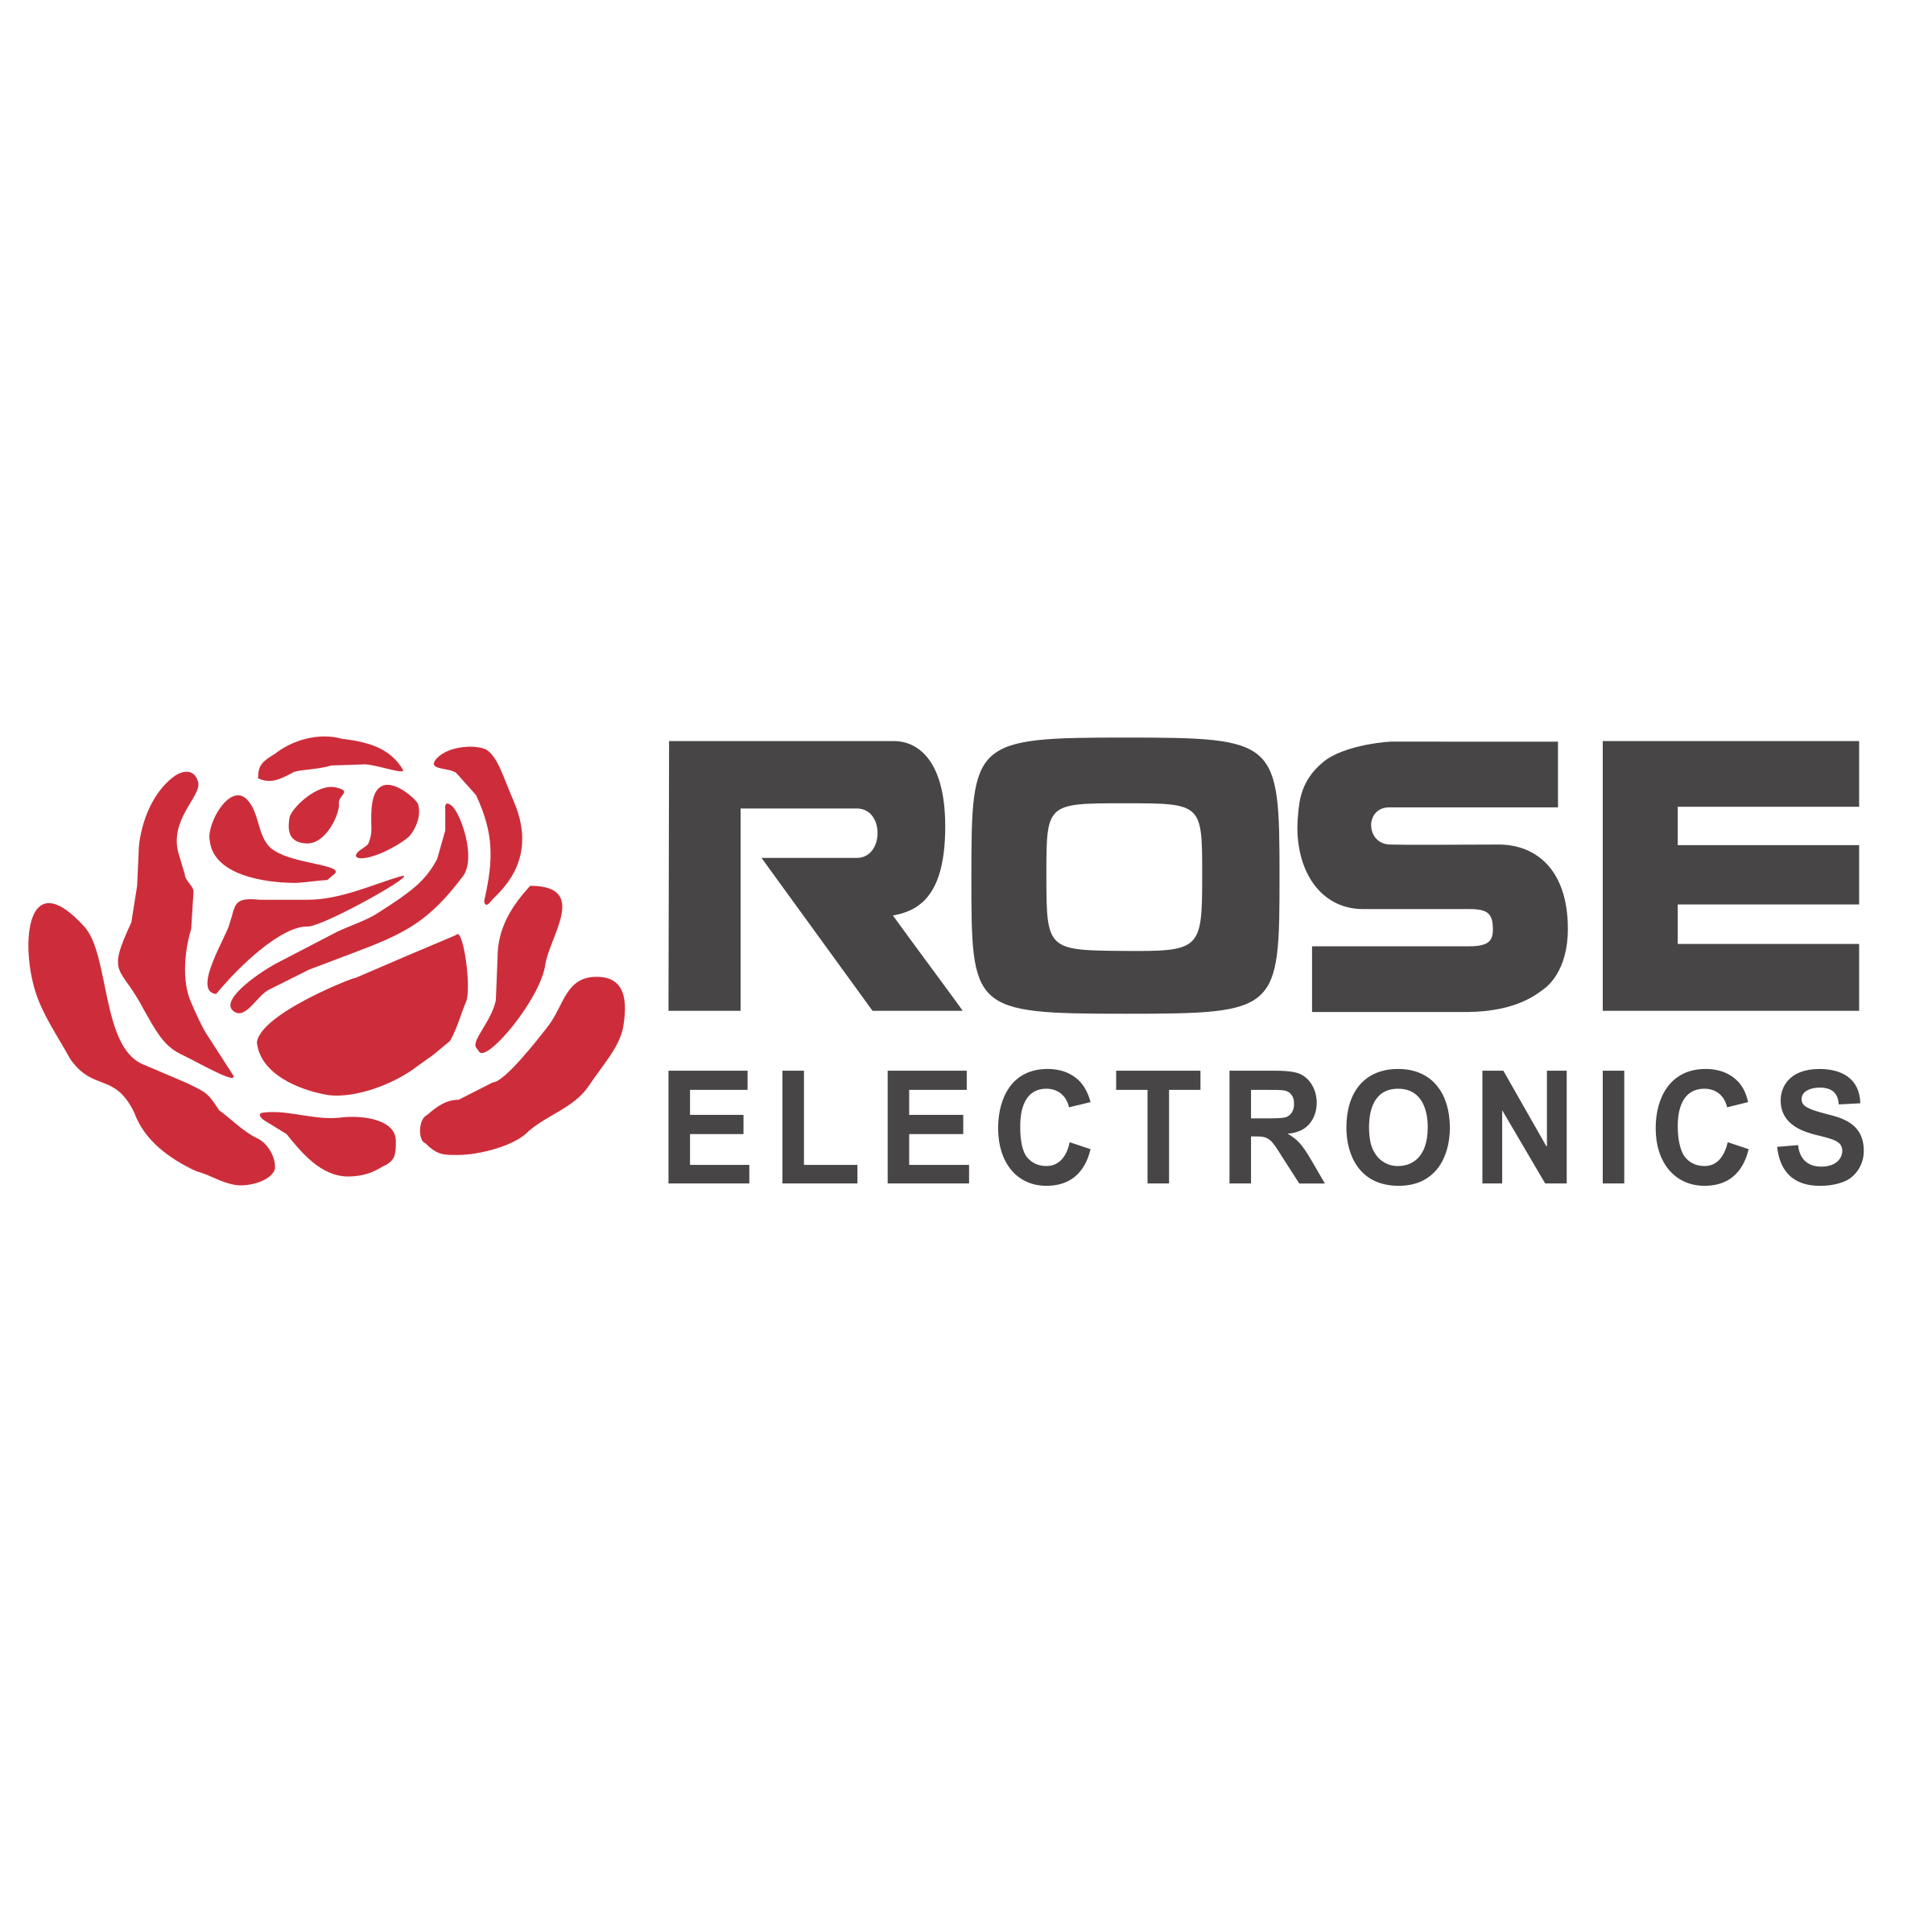 Reaf Logo - Rose Electronics Logo PNG Transparent & SVG Vector